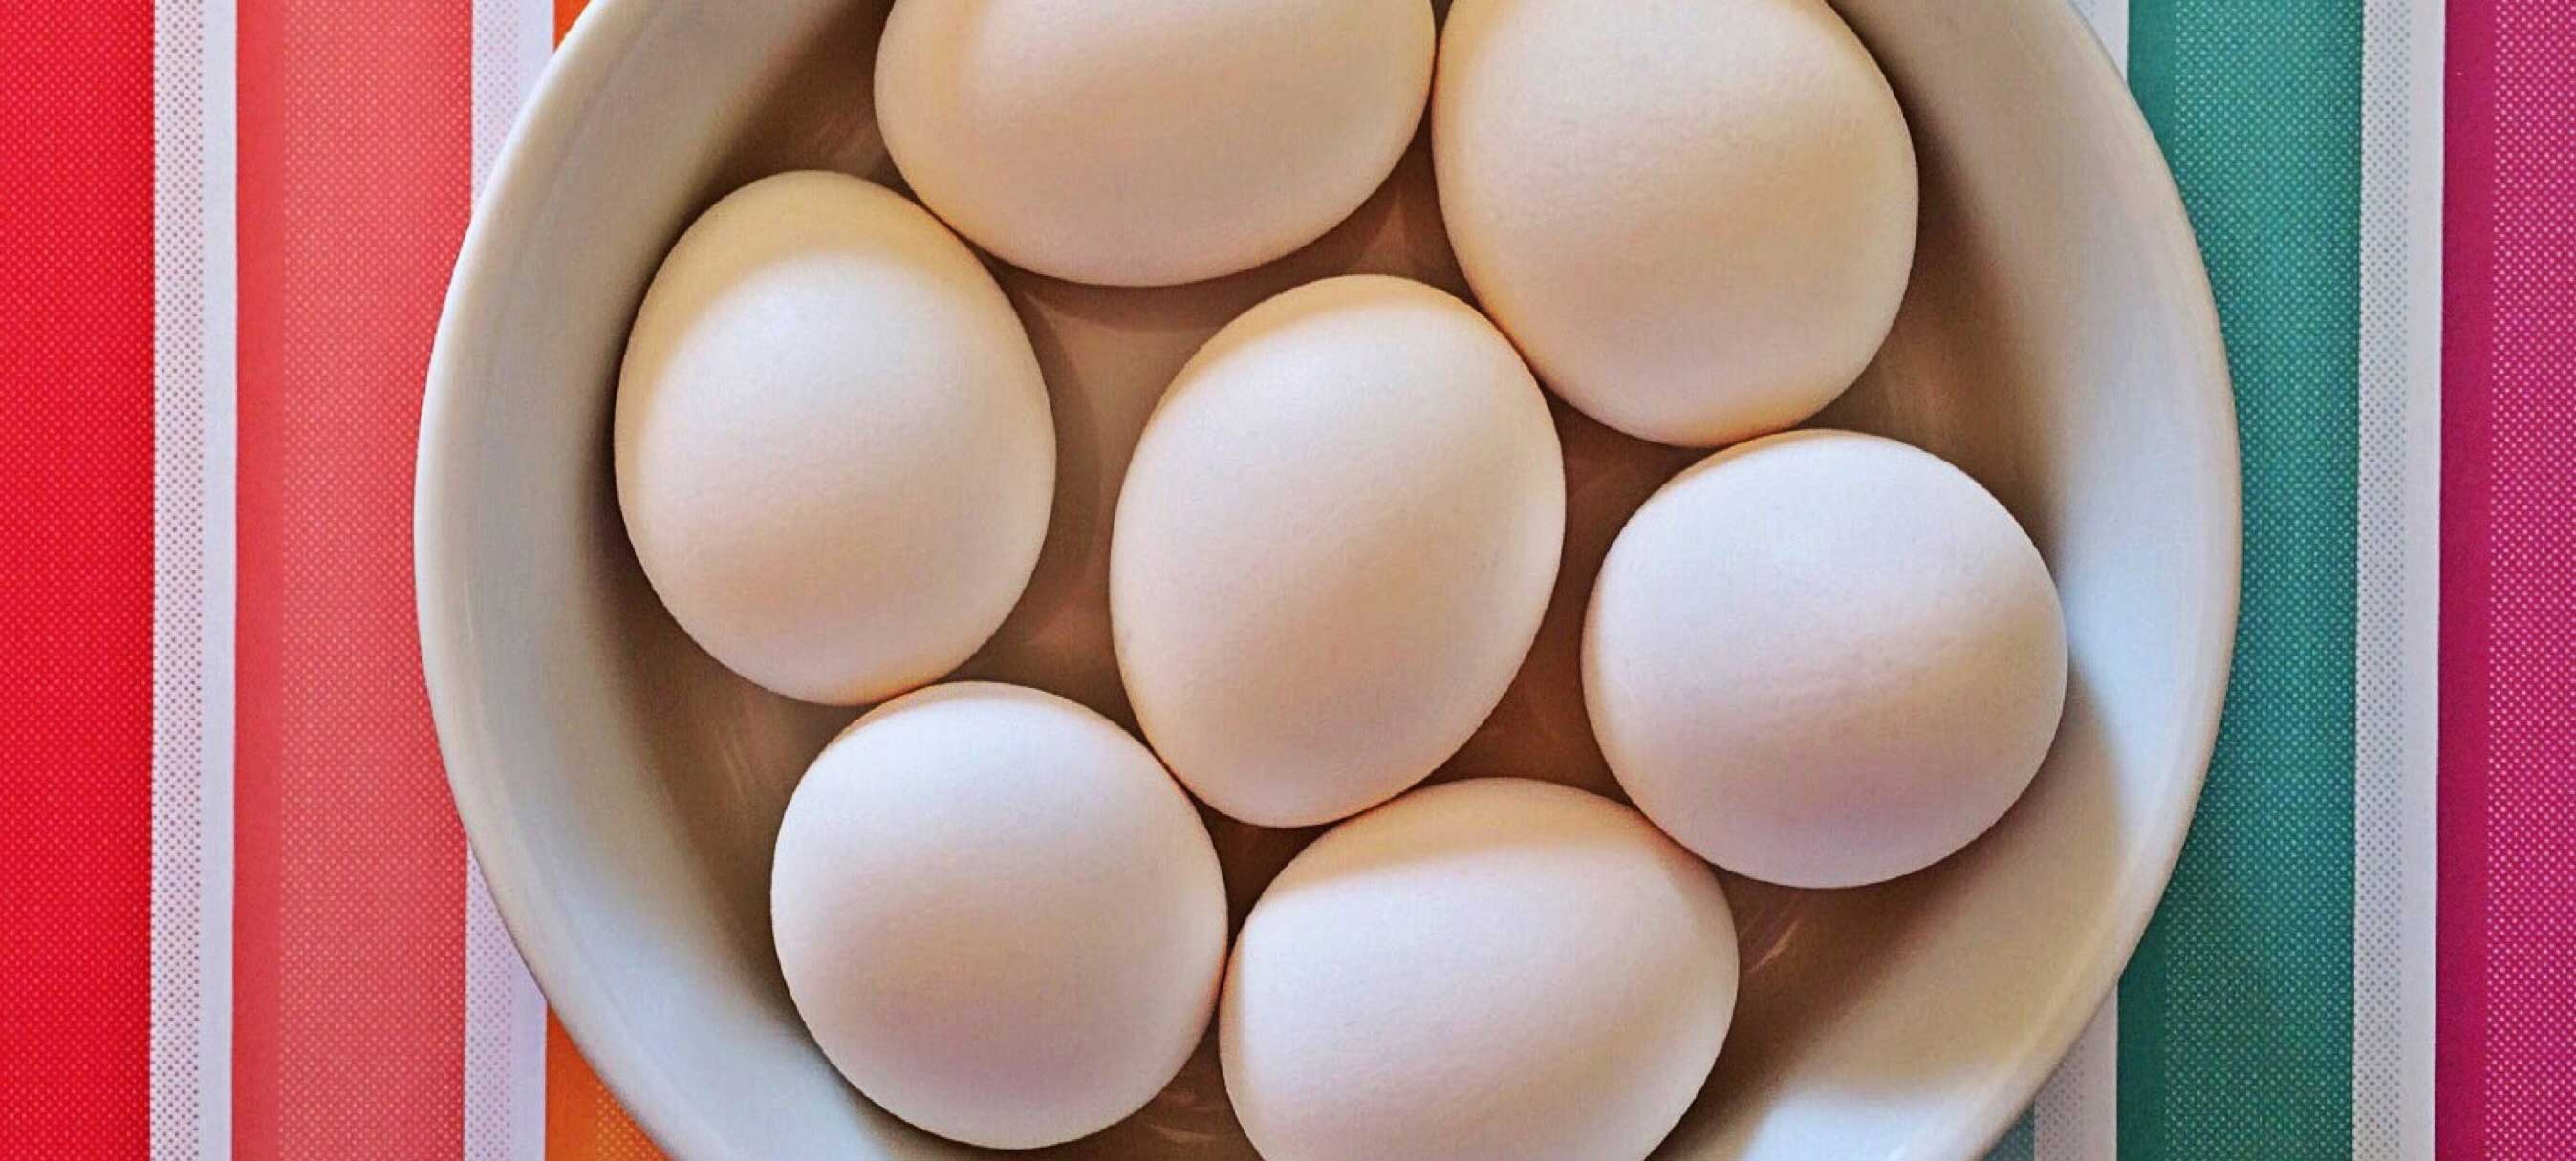 Fins onderzoek: ‘Eieren verminderen risico op dementie’